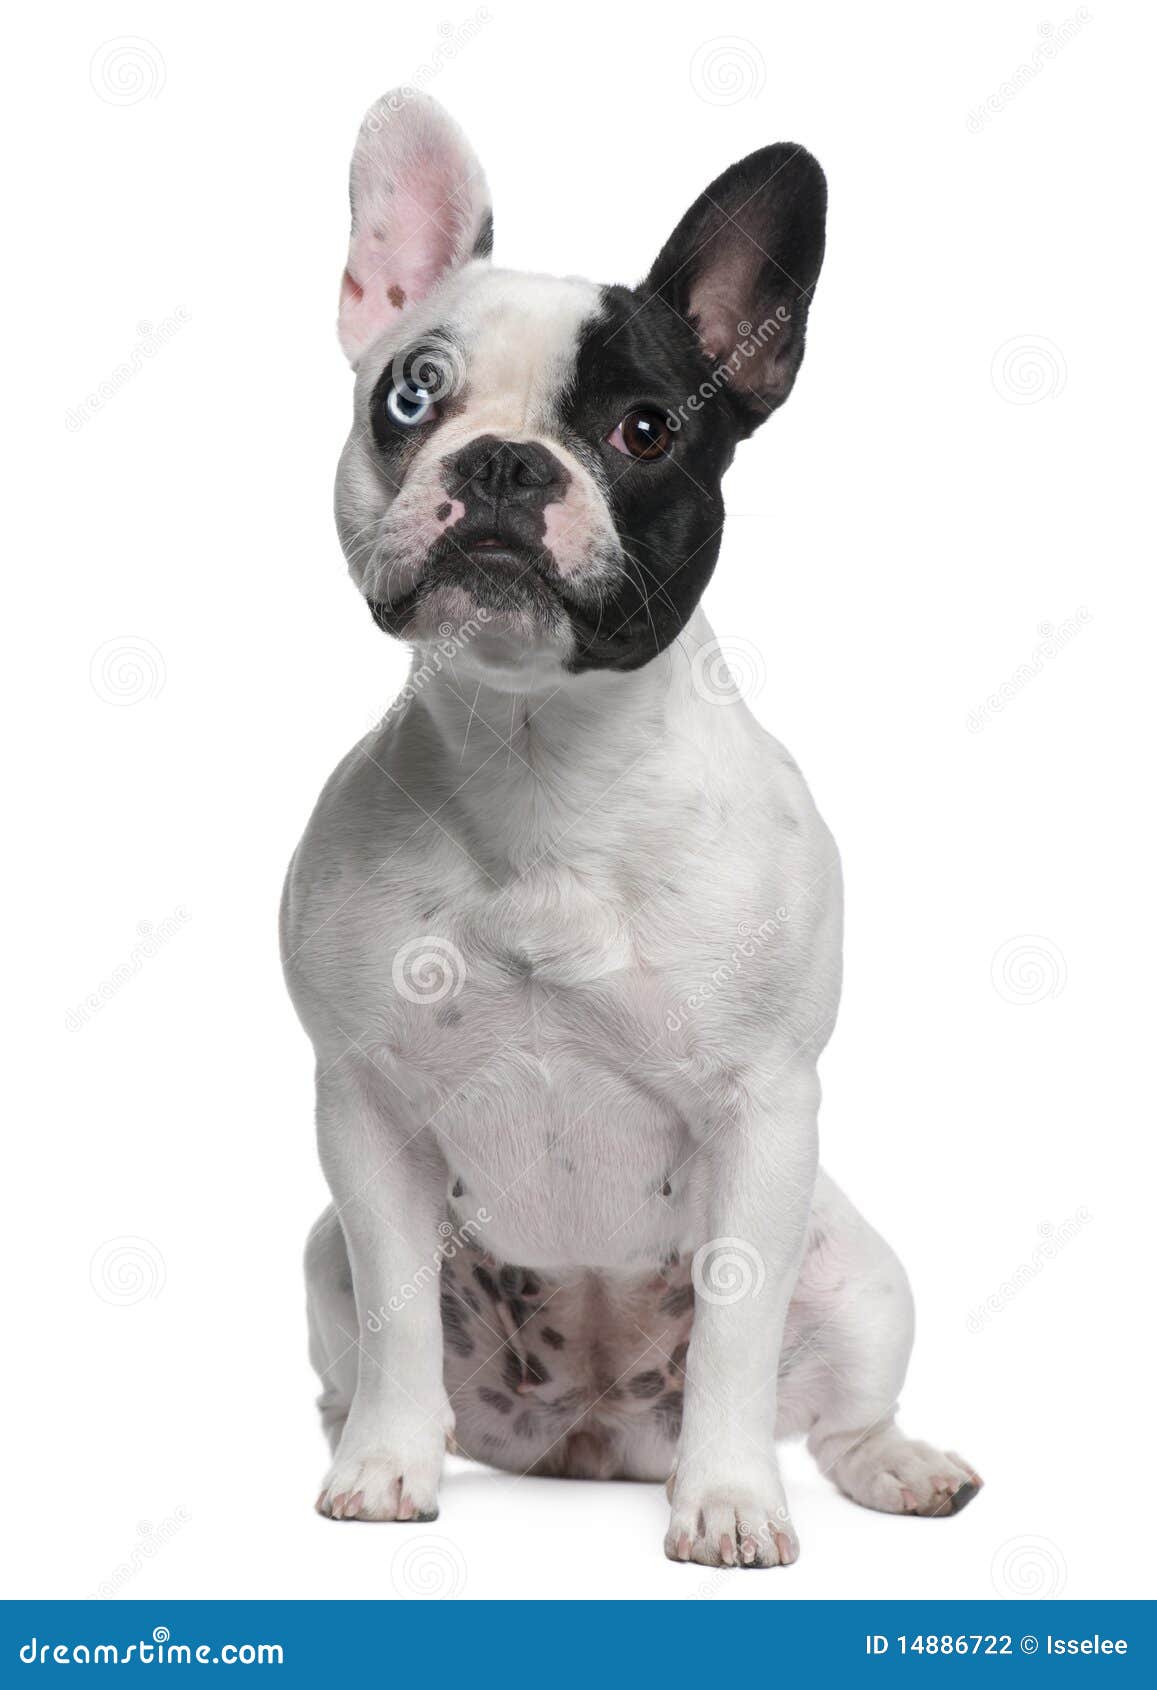 French Bulldog Sitting Stock Photography - Image: 14886722